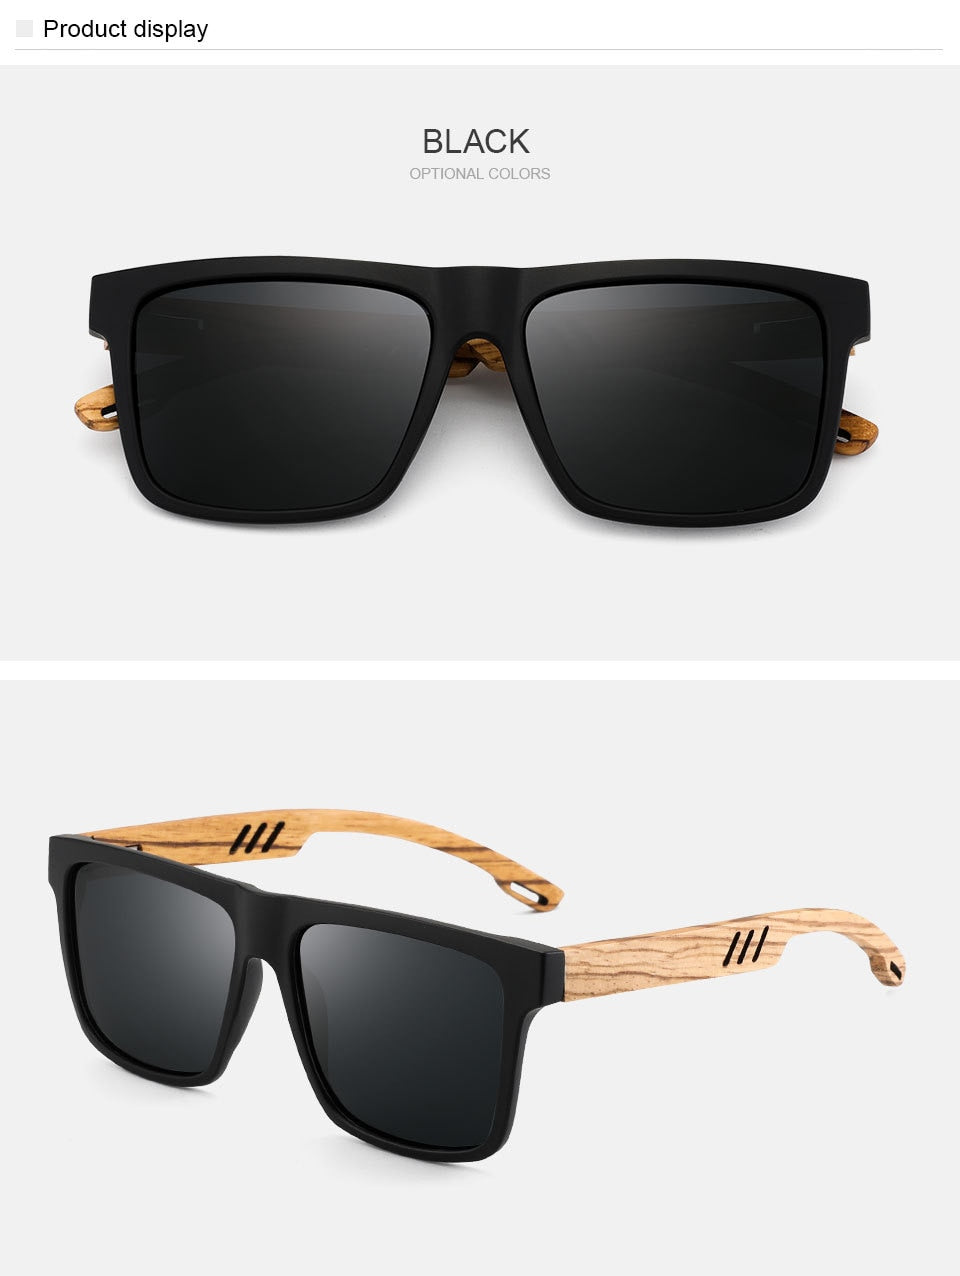 Yimaruili Unisex Full Rim Square  Bamboo/Wooden Frame Polarized Lens Sunglasses 8028 Sunglasses Yimaruili Sunglasses   